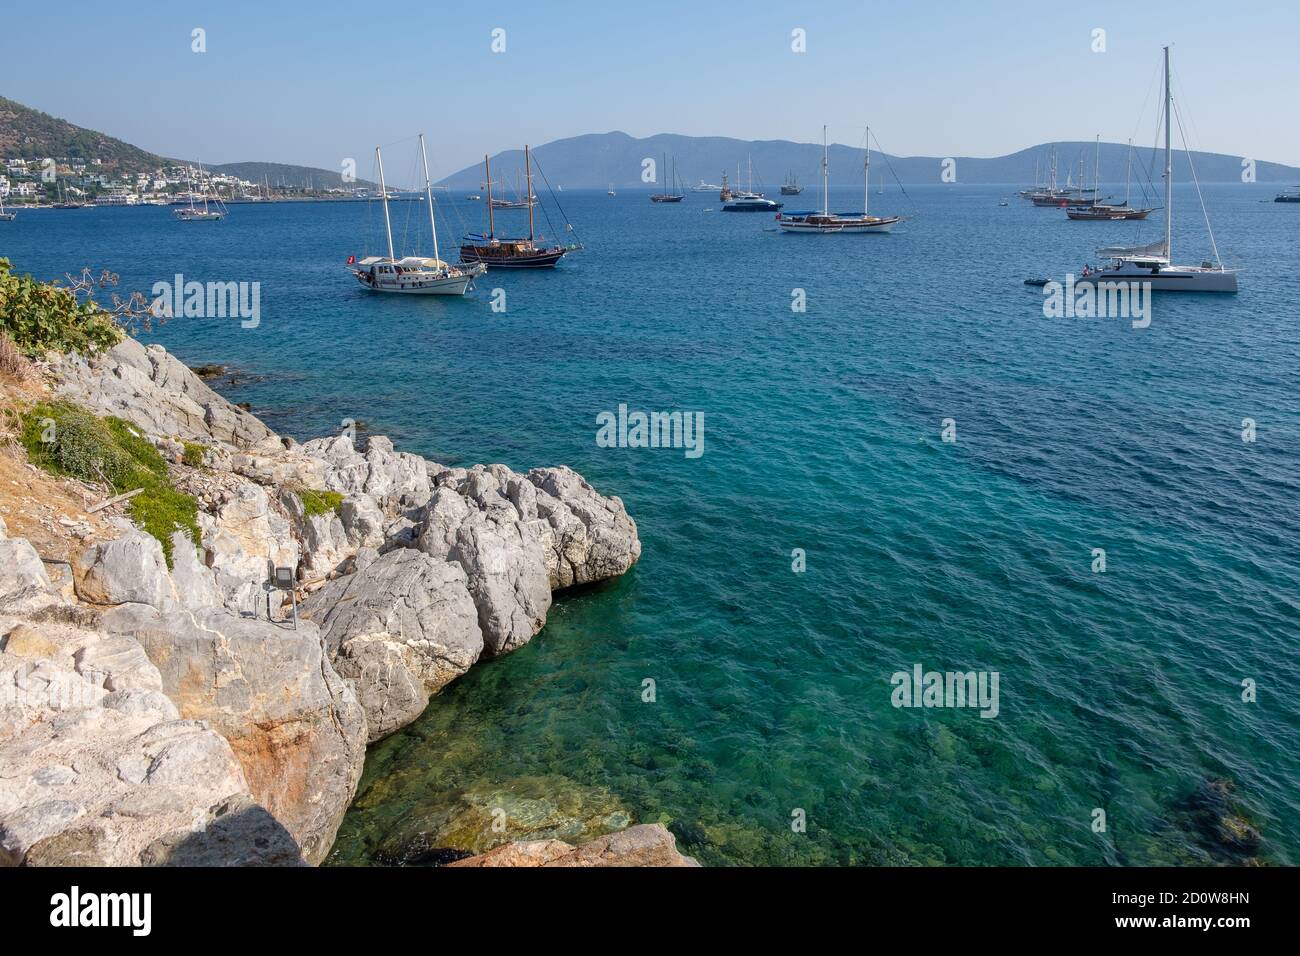 Eaux turquoise spectaculaires de la mer Égée - Bodrum, Turquie Banque D'Images